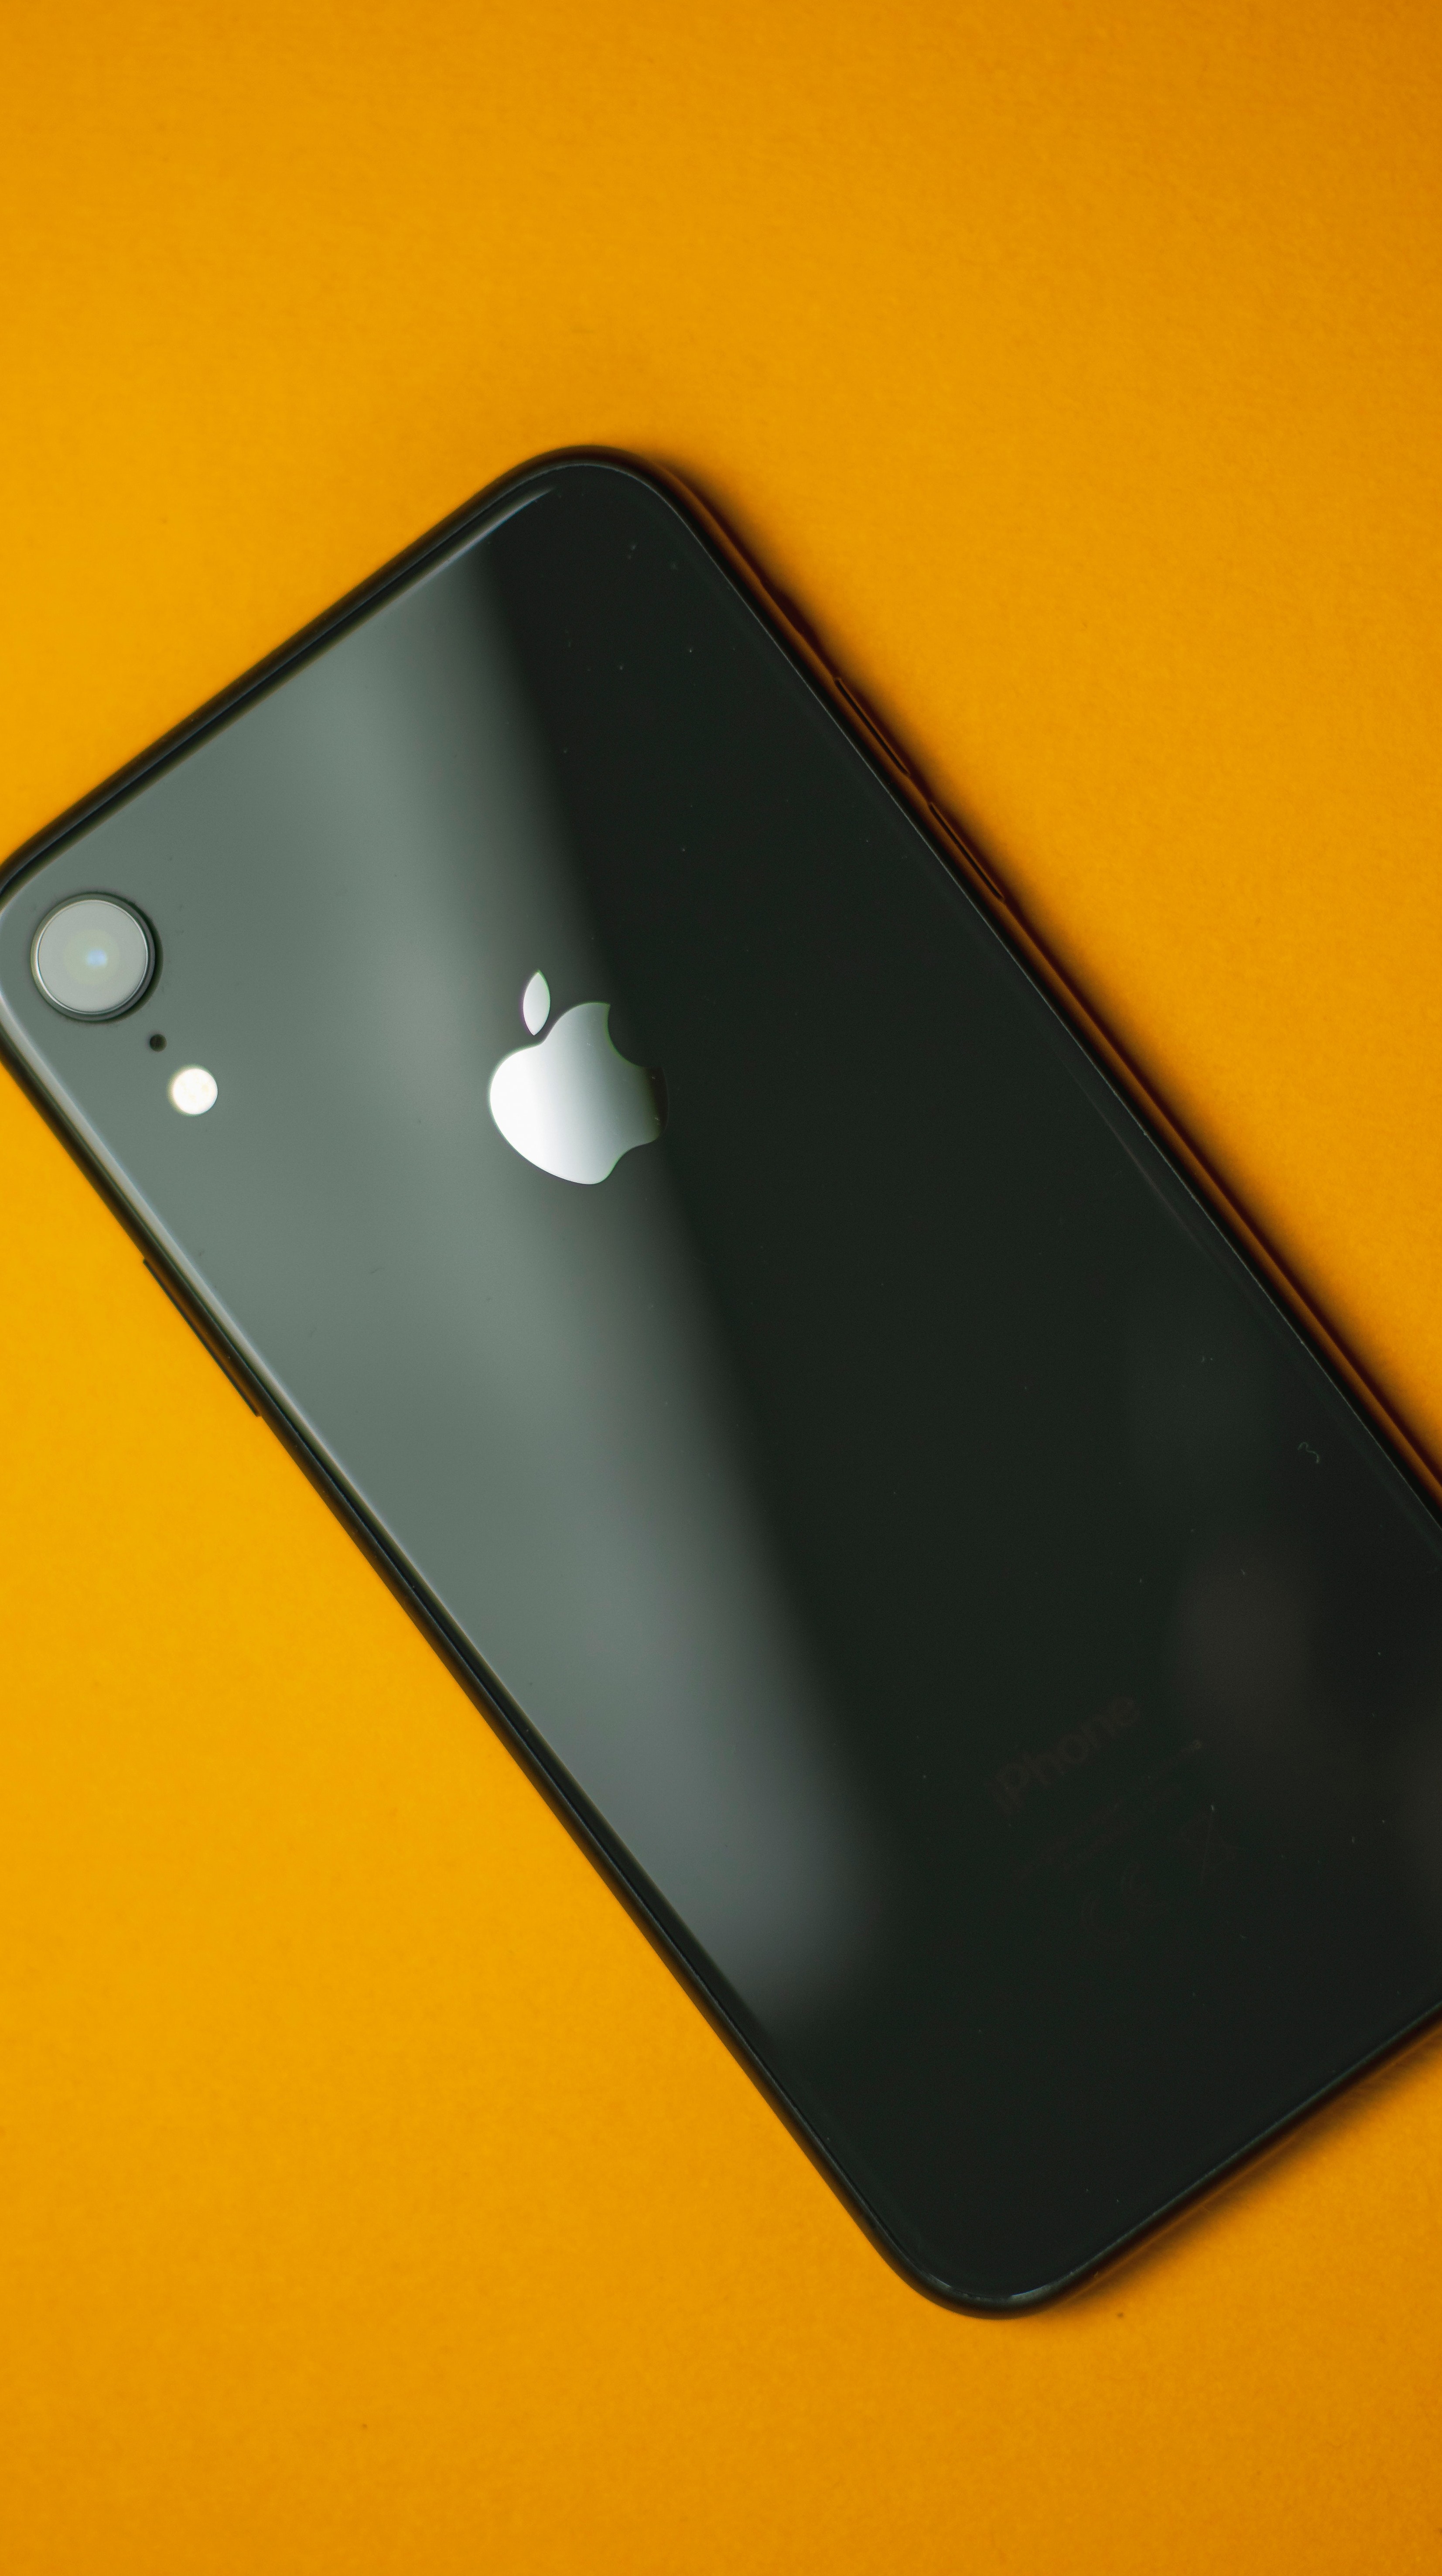 Apple alerta que o seu iPhone está em risco. Veja o que fazer | Empresas